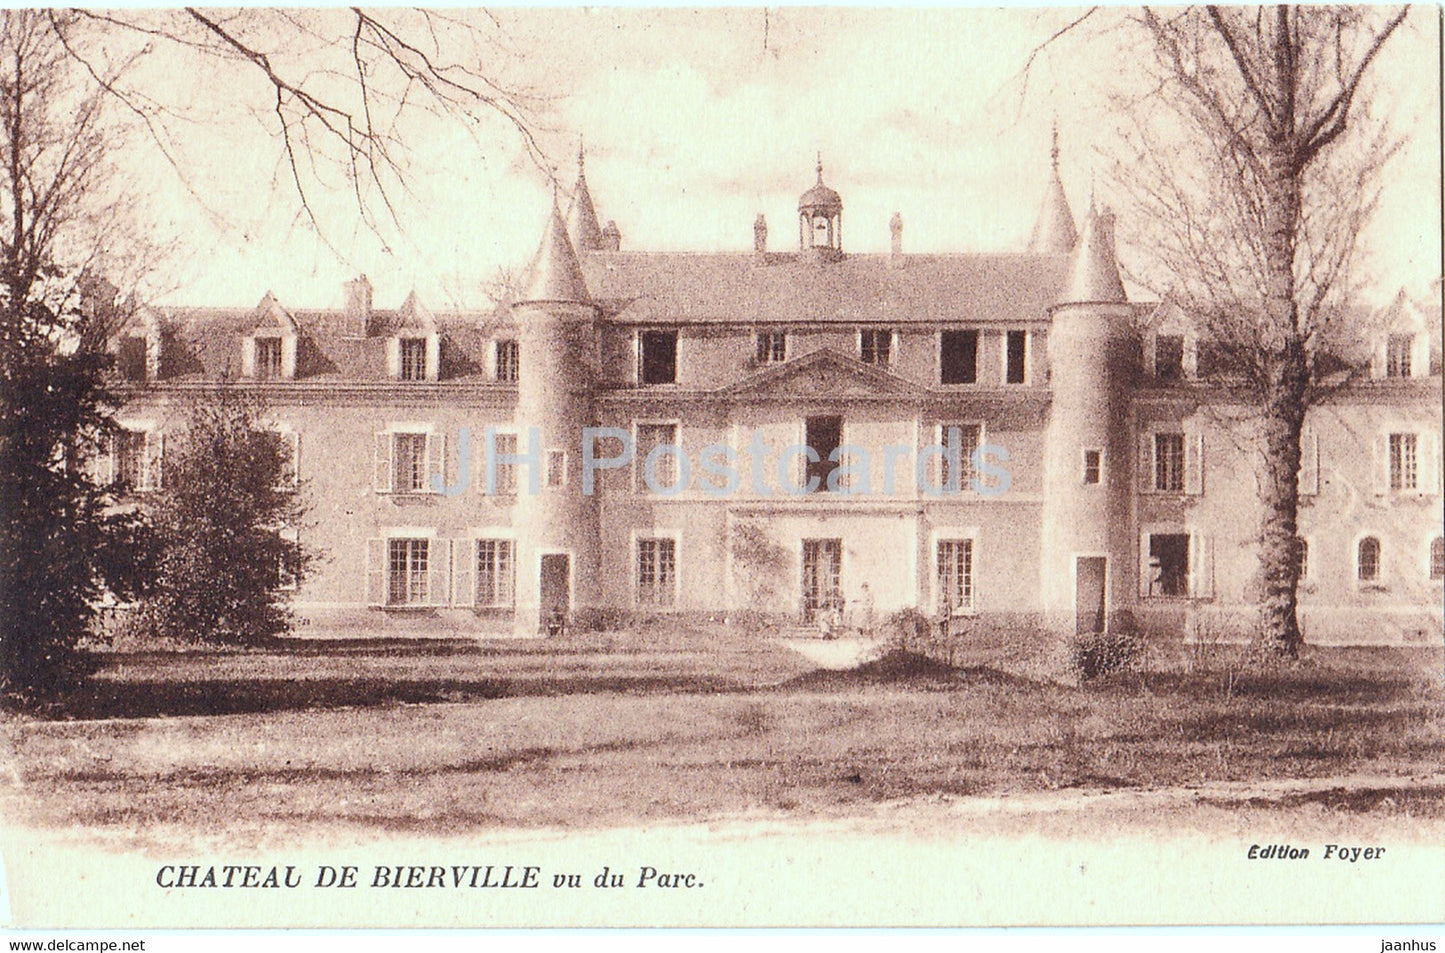 Chateau de Bierville - Vu du Parc - castle - old postcard - France - unused - JH Postcards